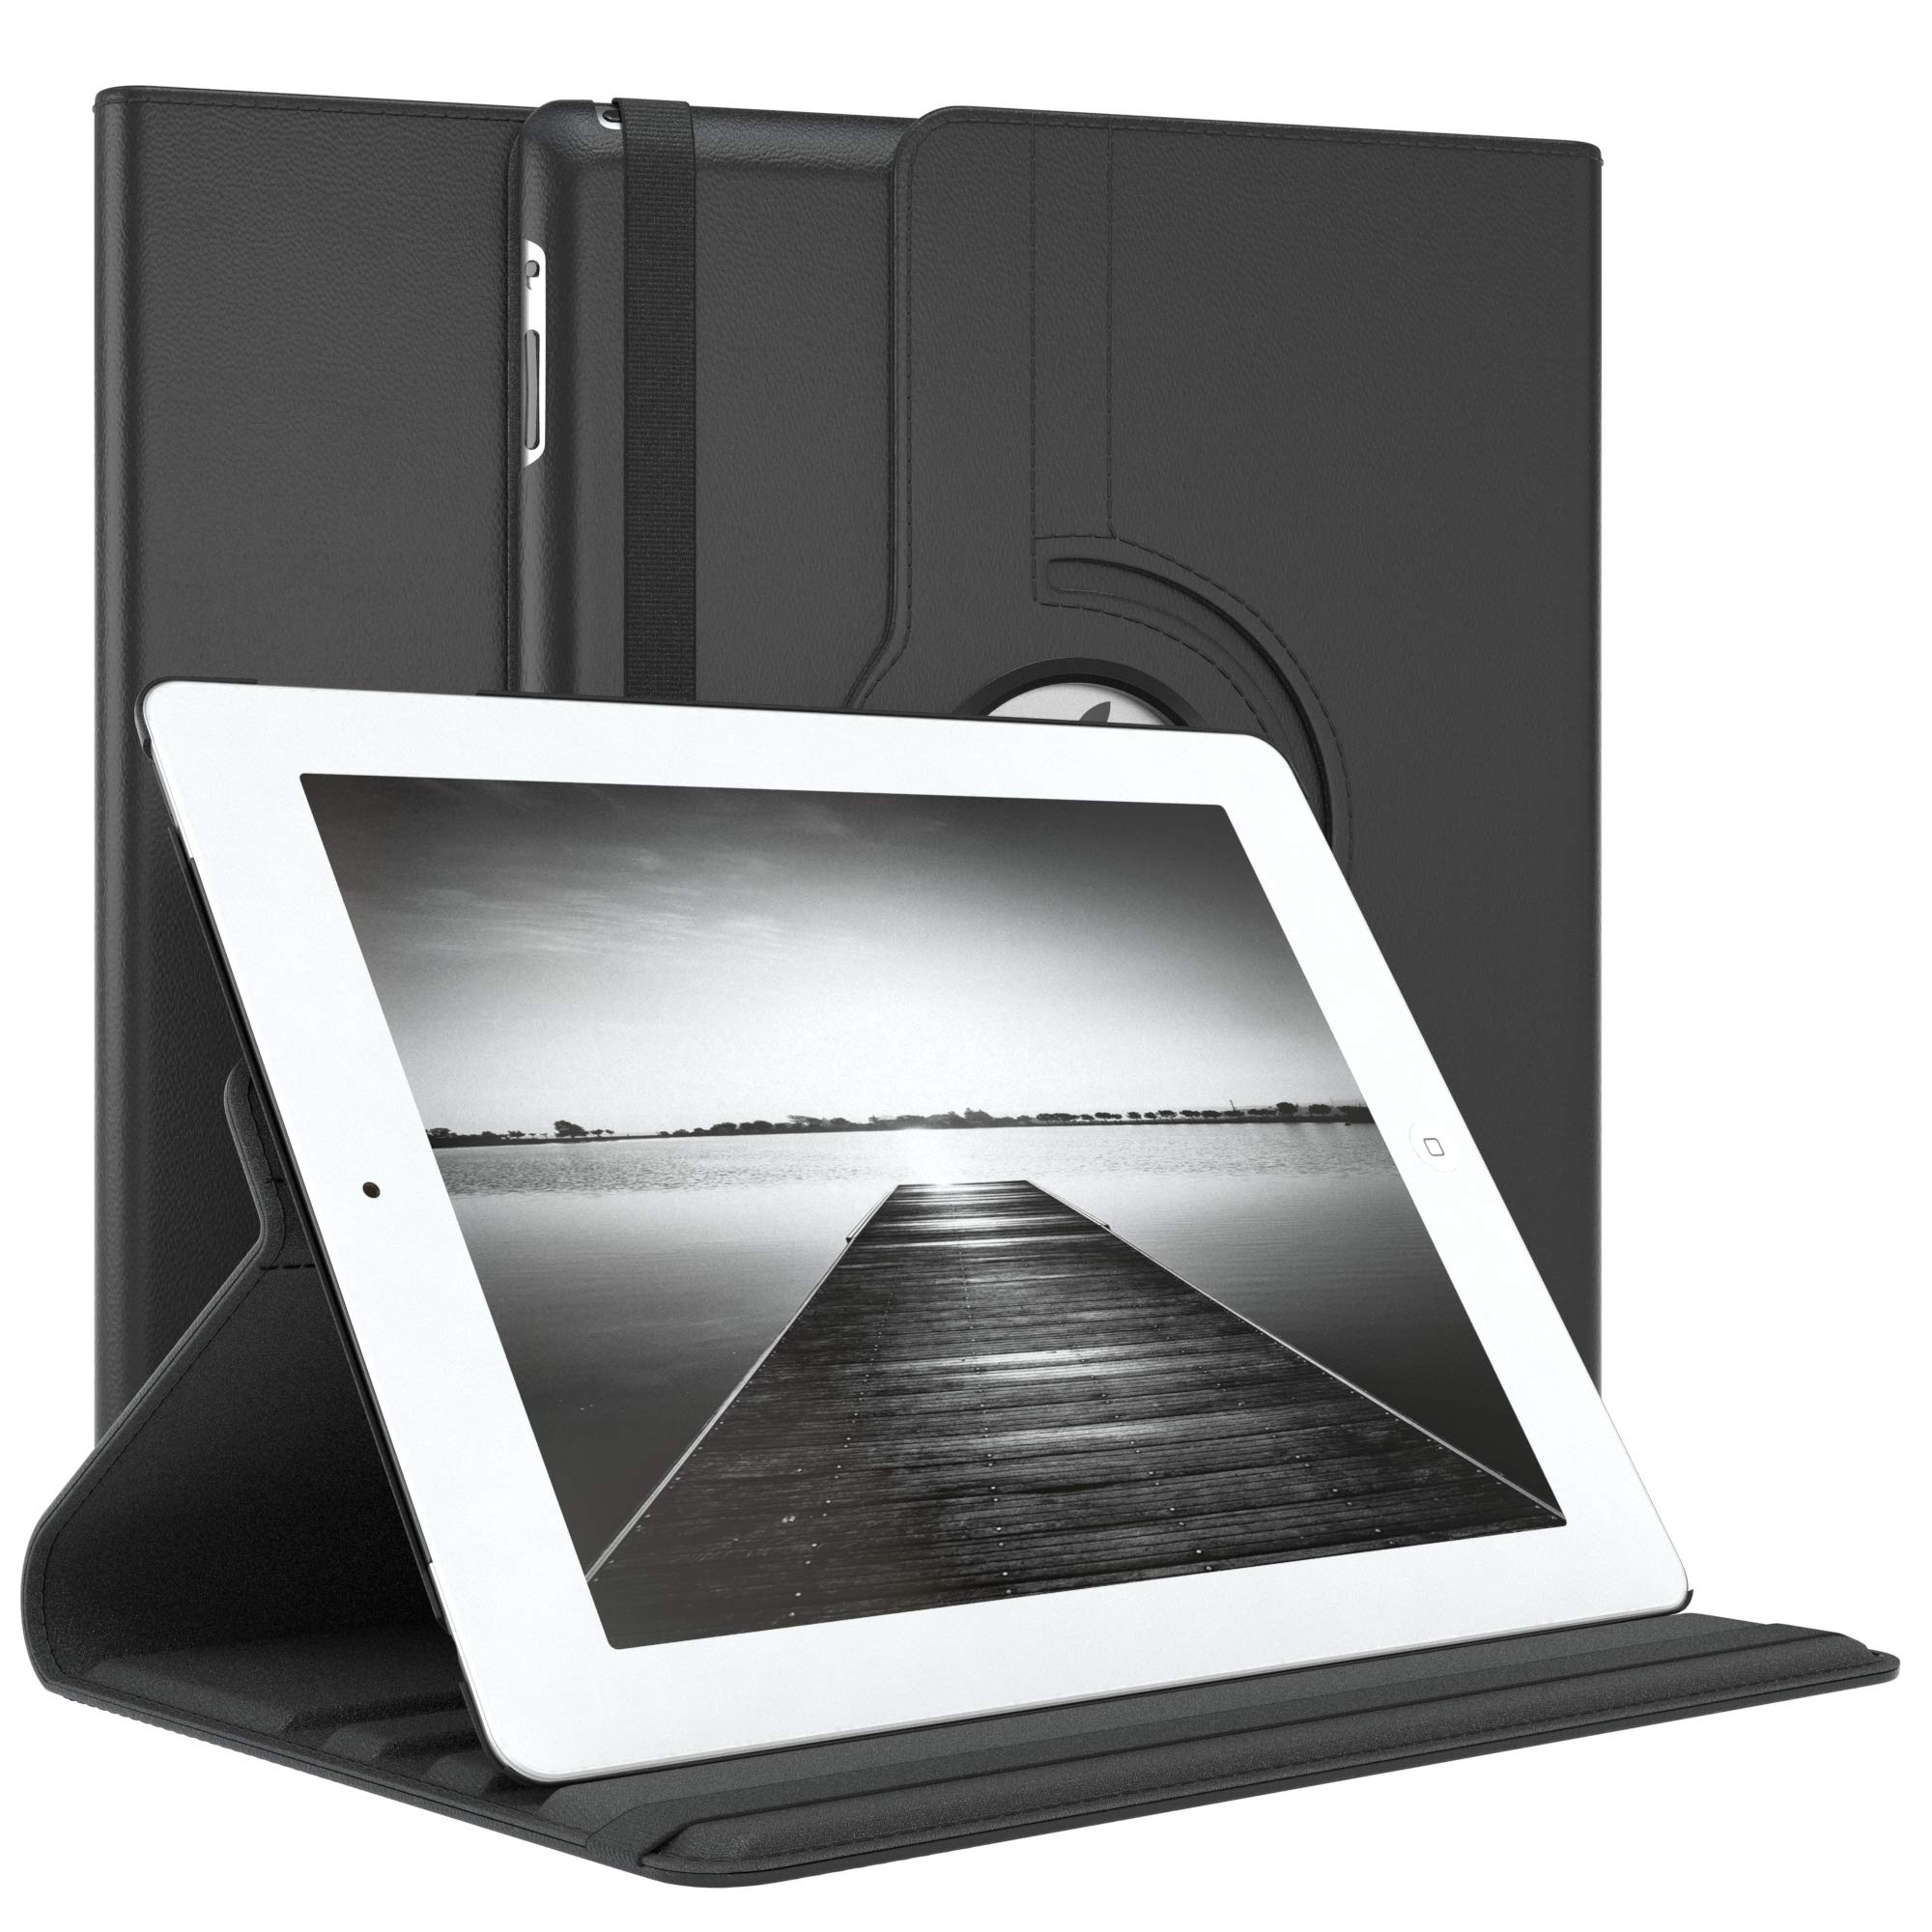 EAZY CASE - Tablet Hülle für iPad 2 / iPad 3 / iPad 4 Schutzhülle 9.7 Zoll Smart Cover Tablet Case Rotationcase zum Aufstellen Klapphülle 360° drehbar mit Standfunktion Tasche Kunstleder Schwarz